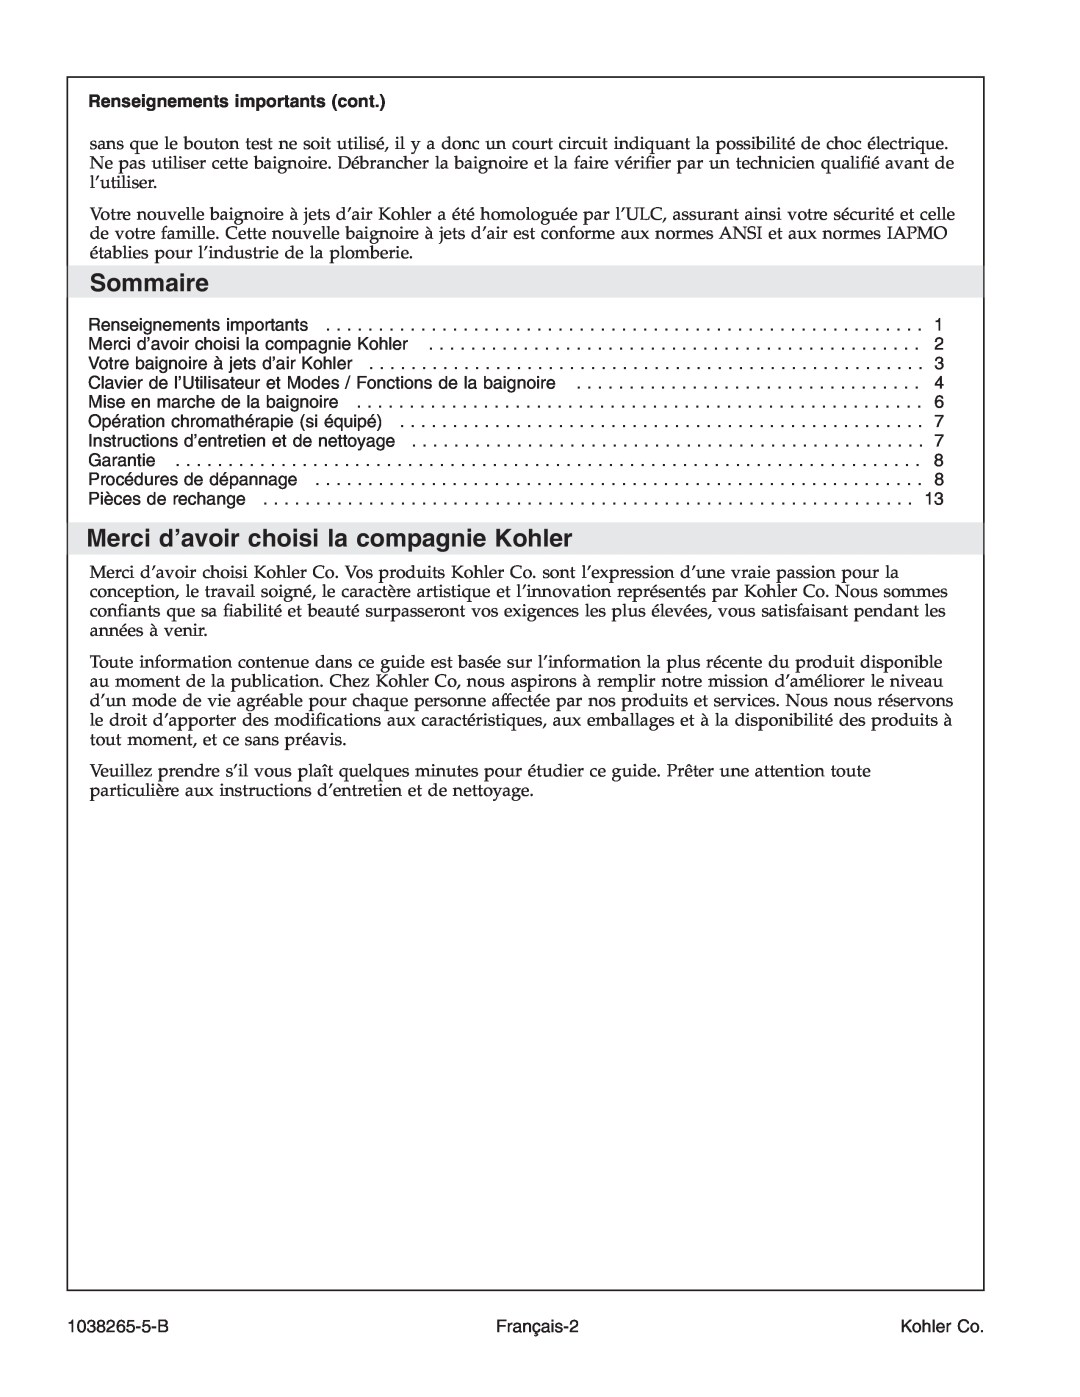 Kohler K-1375 manual Sommaire, Merci d’avoir choisi la compagnie Kohler, Renseignements importants cont 